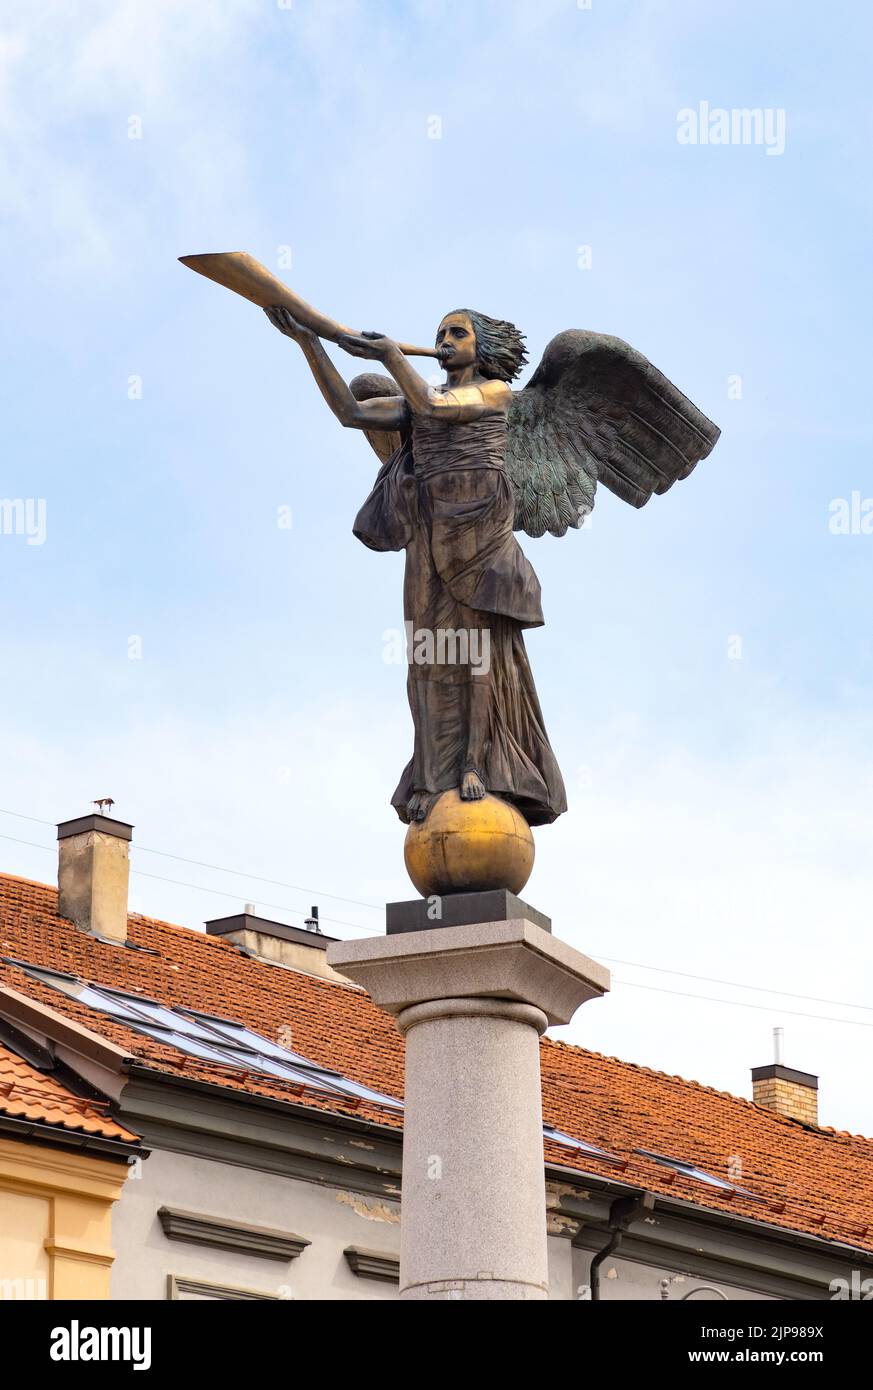 Ange d'Uzupuis statue de Romas Vilčiauskas dans l'Ange de la place d'Uzupuis, est un symbole de la république d'Uzupuis, la vieille ville de Vilnius, Vilnius Lituanie Banque D'Images